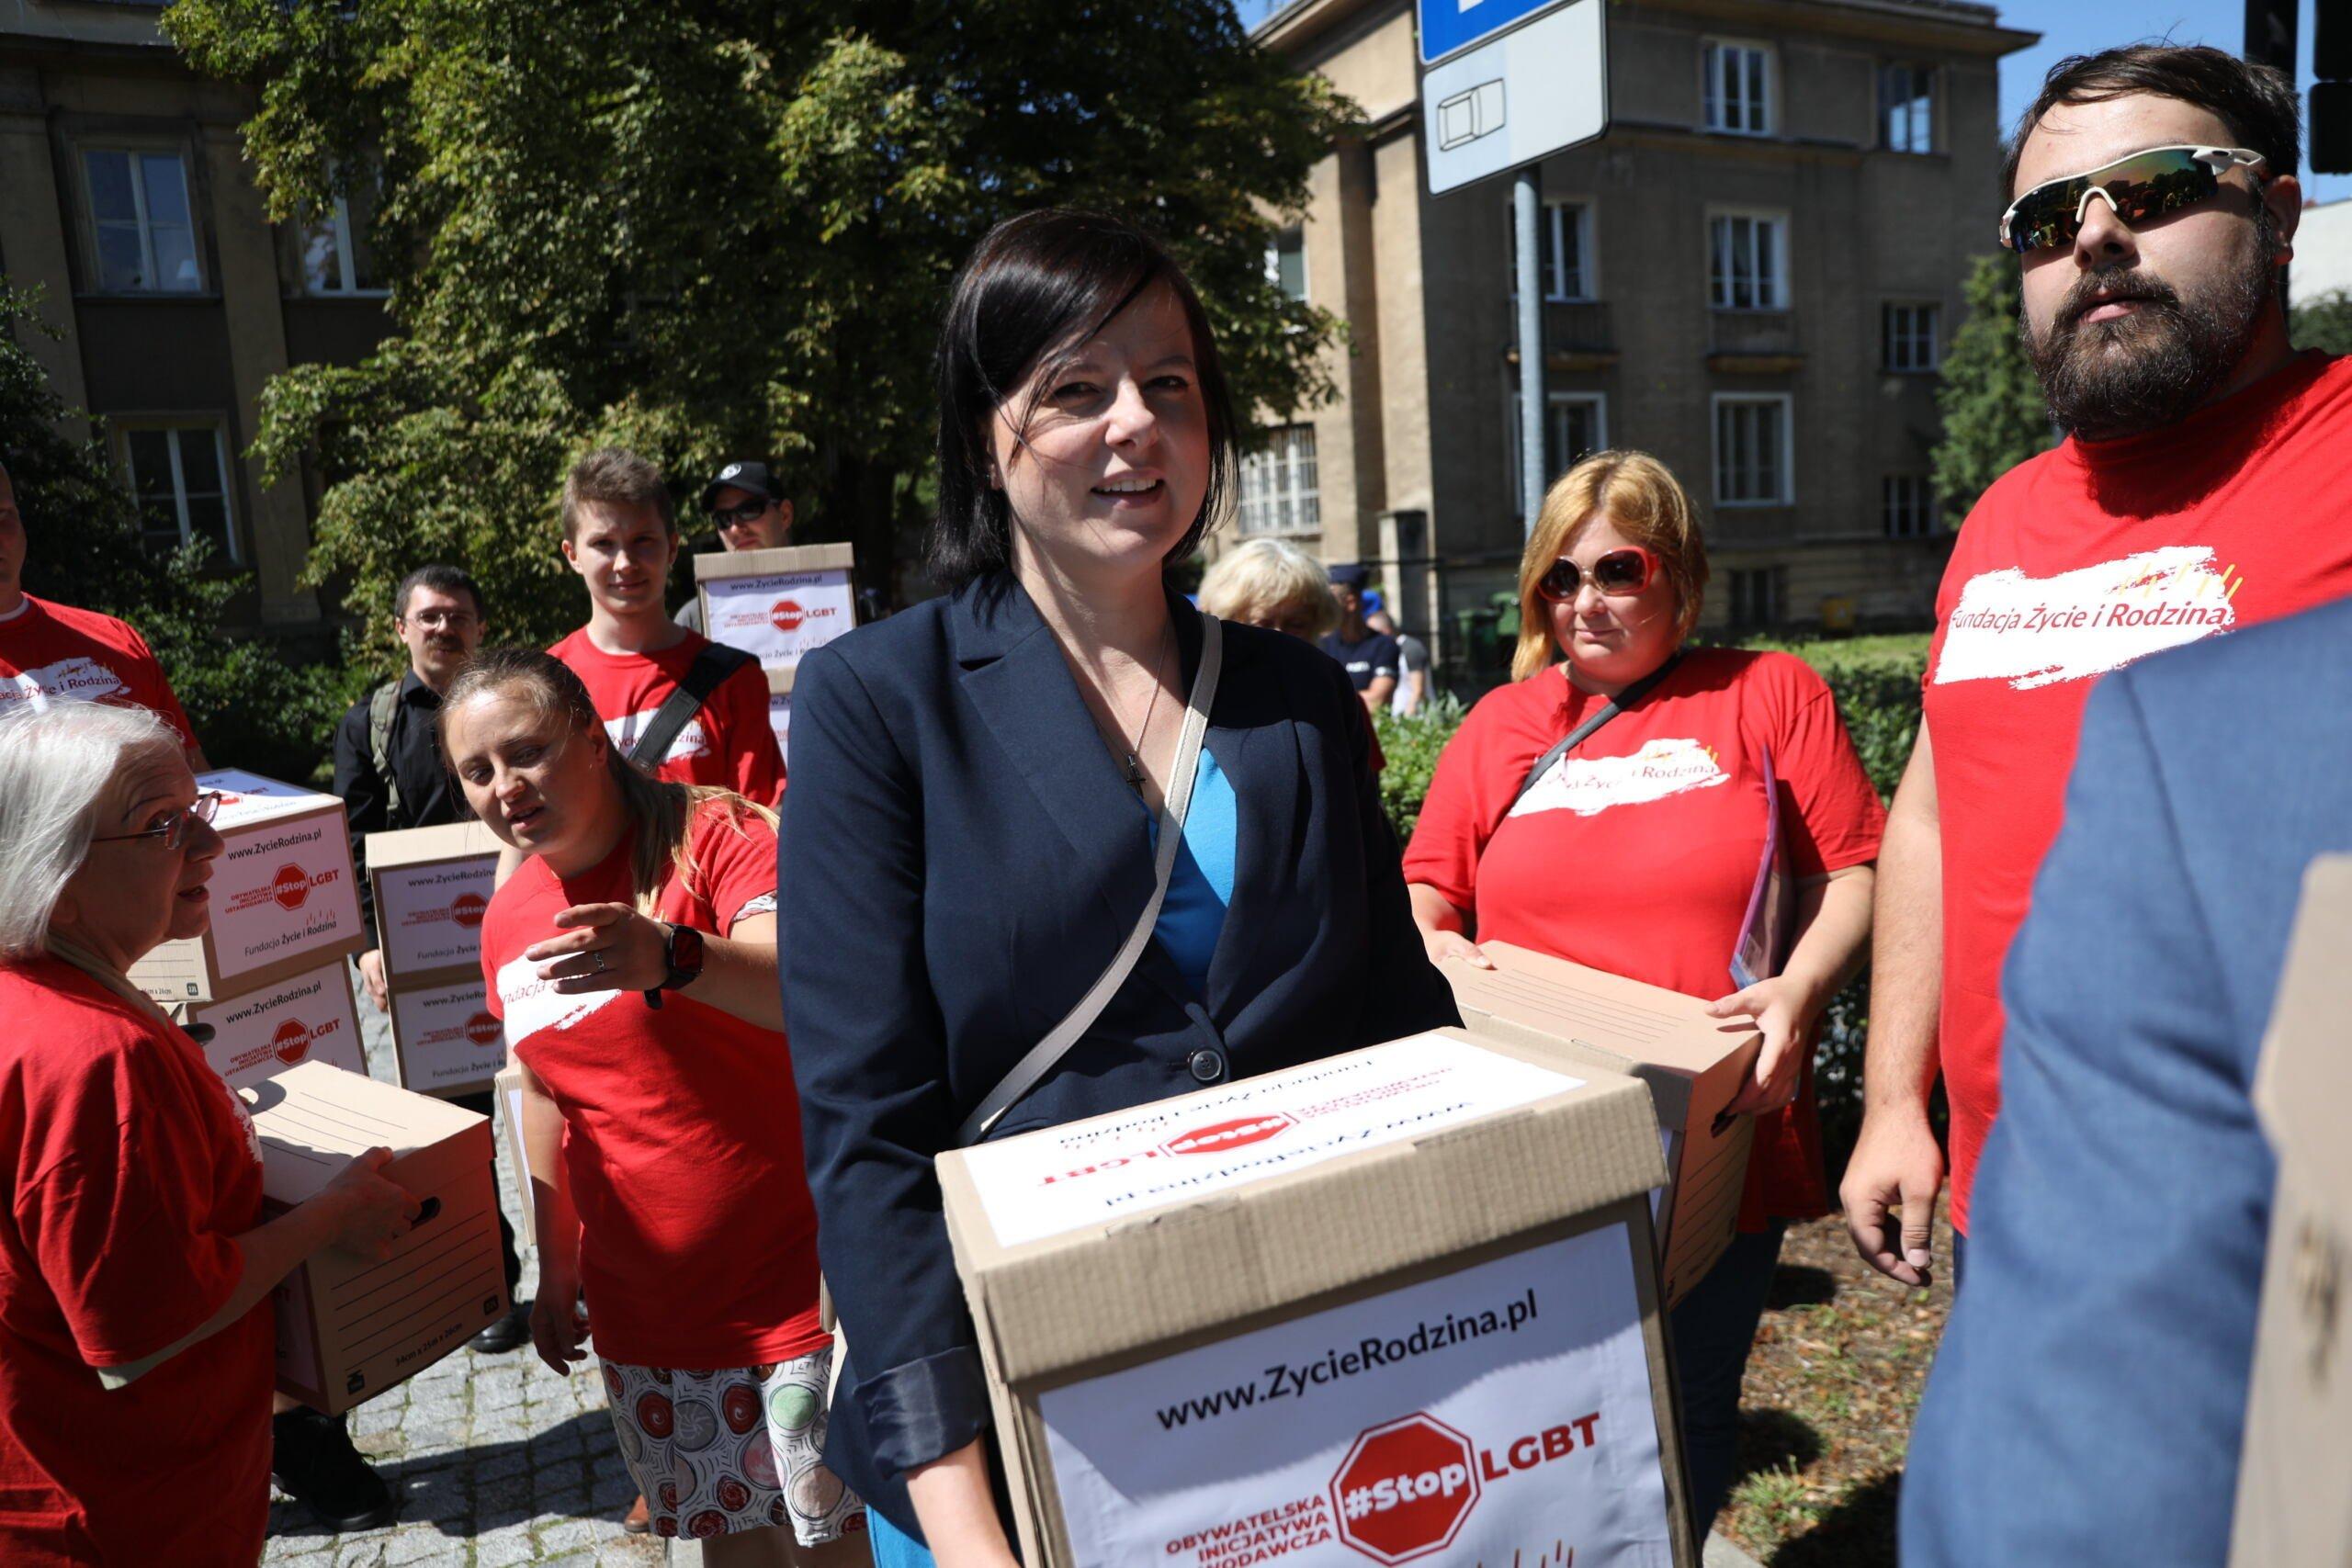 Kaja Godek przedstawiła w Sejmie projekt ustawy, która miałaby zakazać Marszów i parad Równości. Na zdjęciu składa podpisy pod tym projektem #StopLGBT, 9 sierpnia 2020